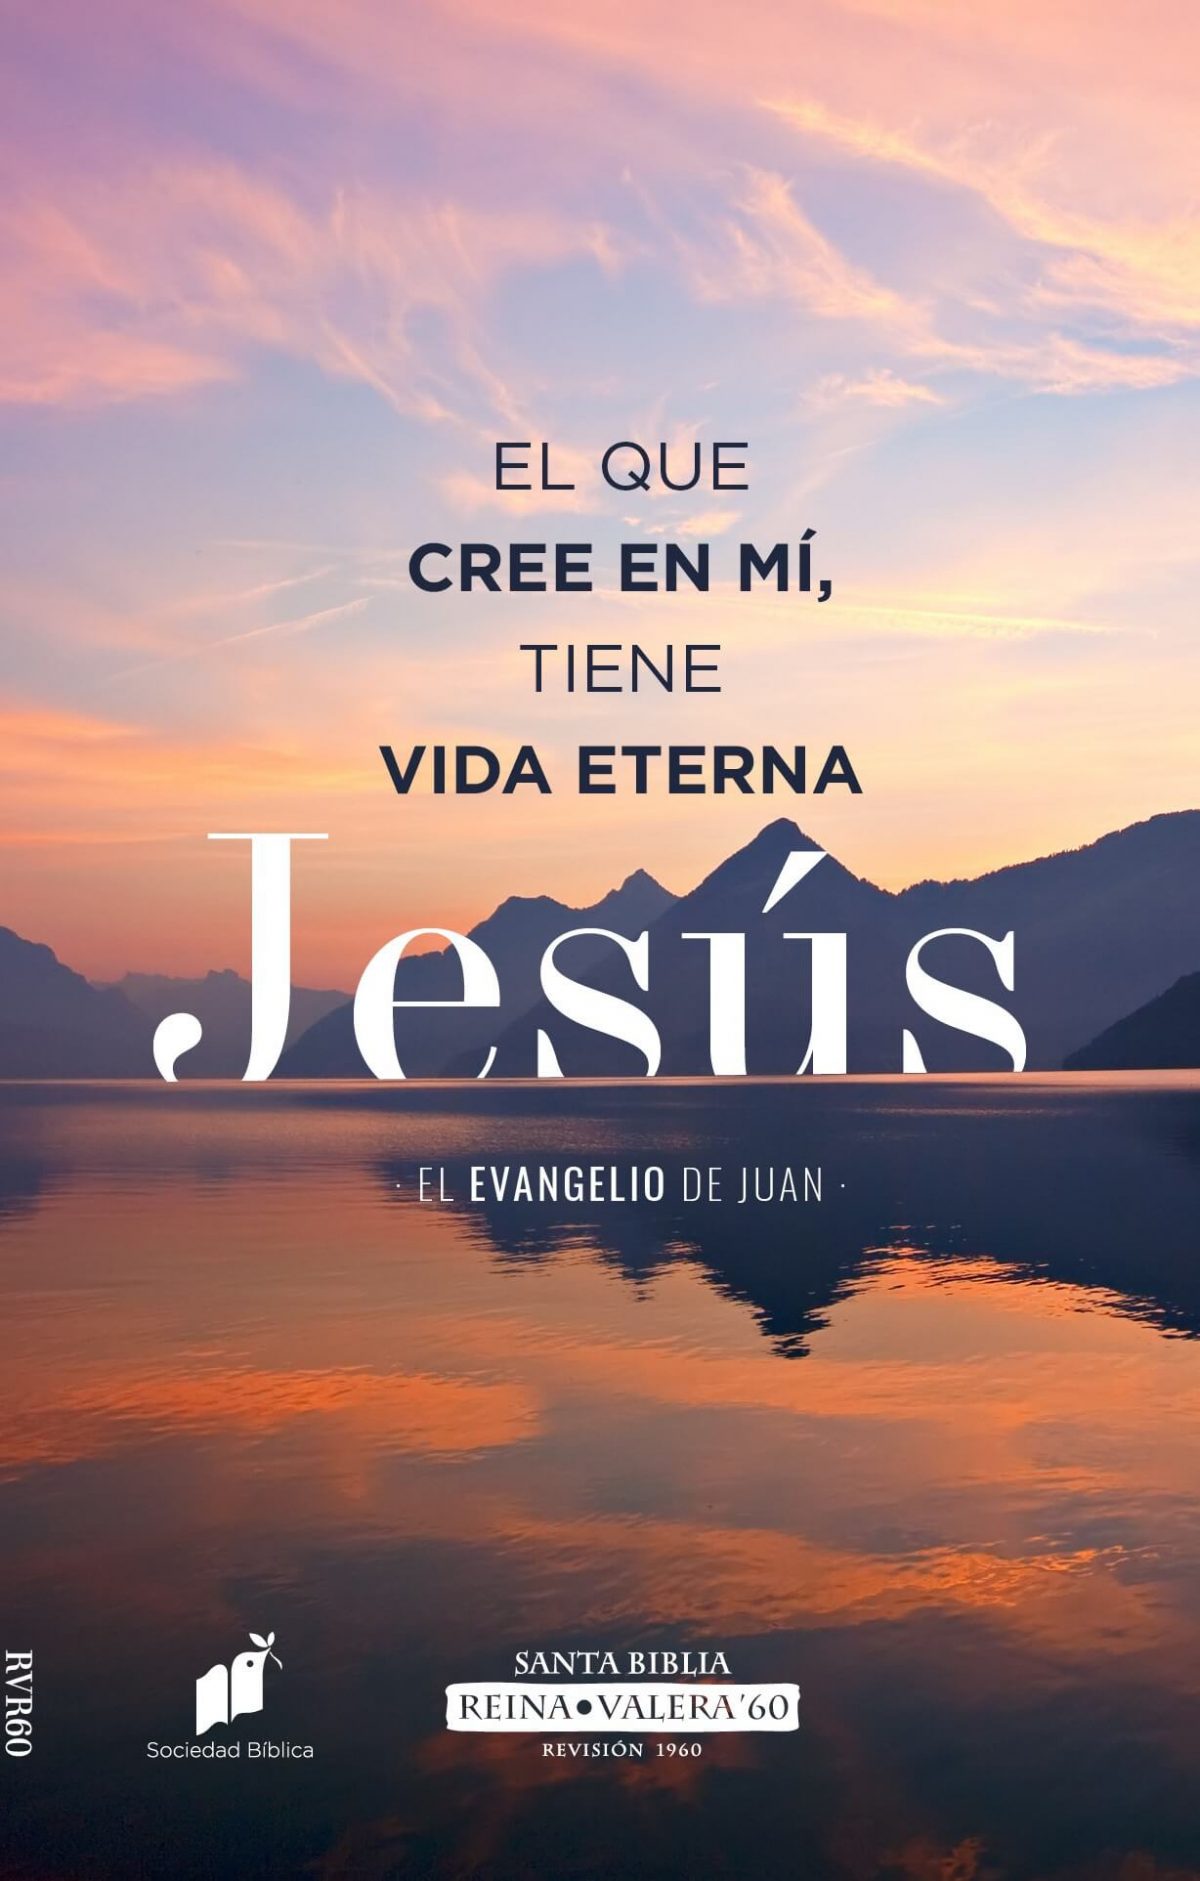 Biblia RVR60  "El que cree en mi tiene vida eterna  Jesús"